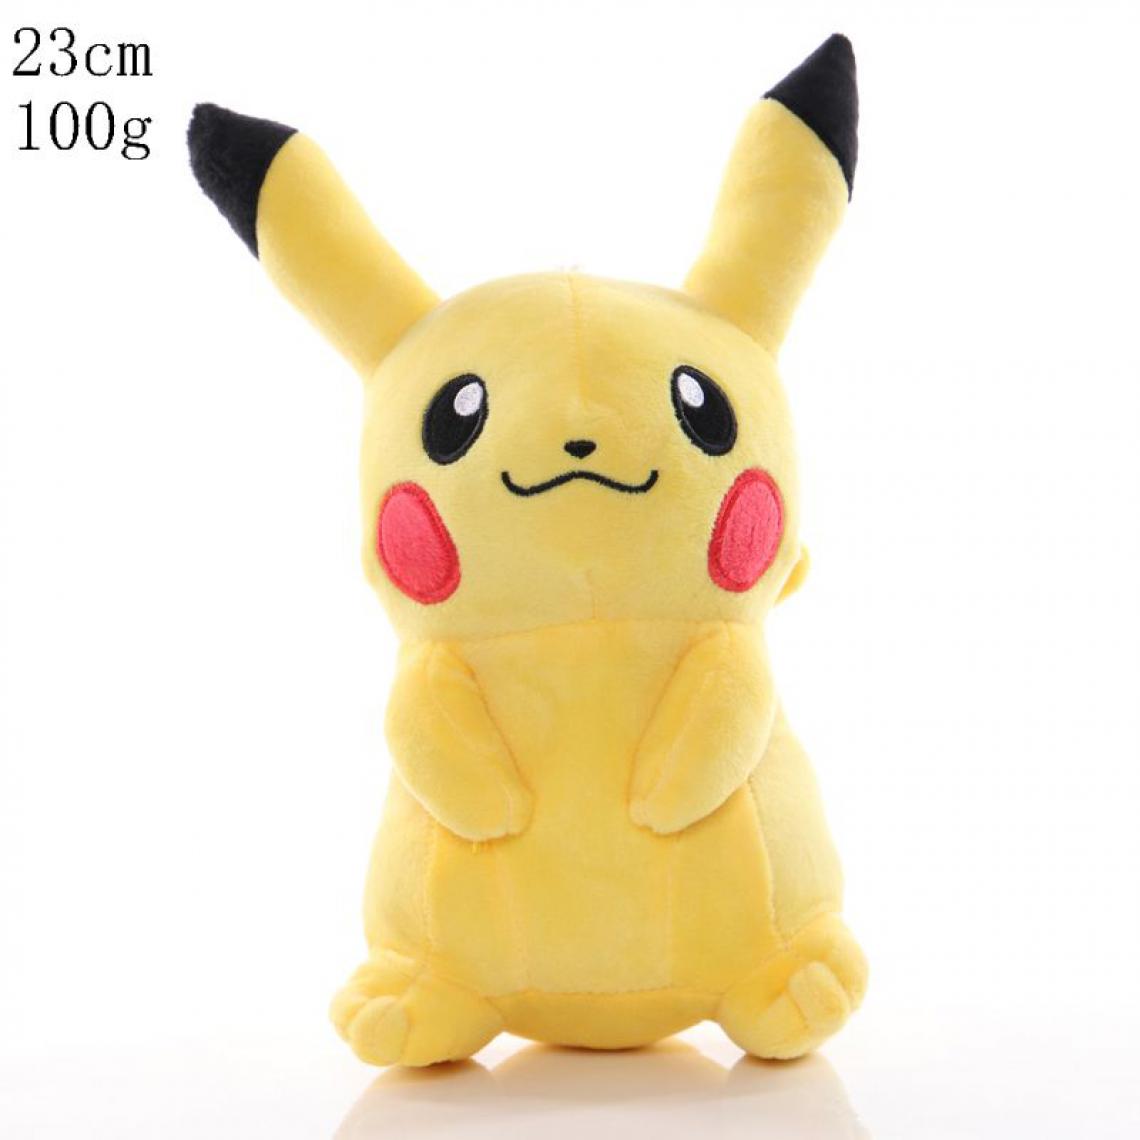 Generic - Poupée en peluche pokémon Pikachu 23 cm - Jaune  - Animaux